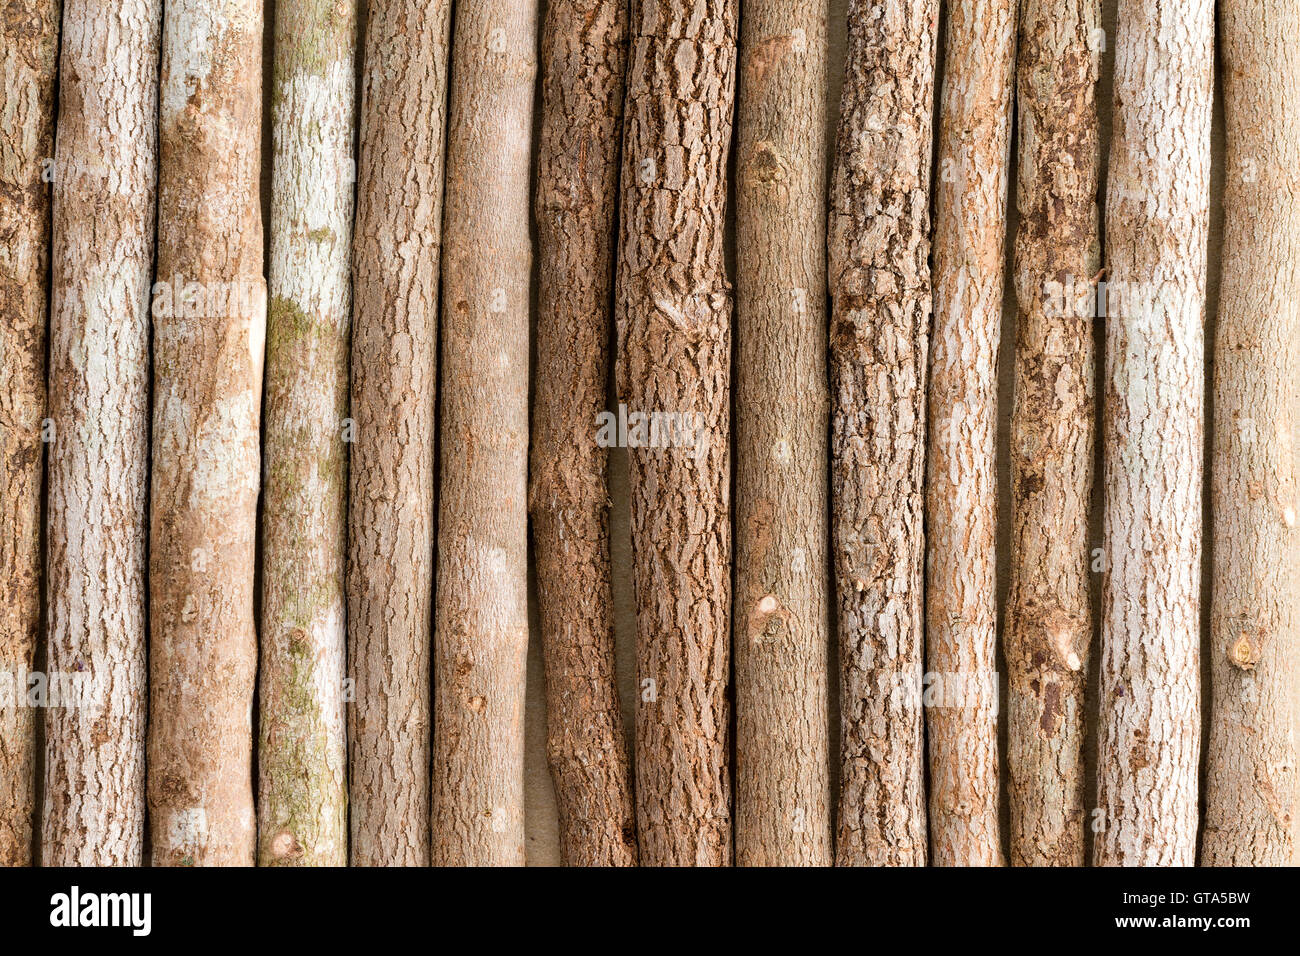 La texture de fond d'une rangée de crayons de couleur en bois naturel rustique crayons placés côte à côte dans une vue plein cadre Banque D'Images